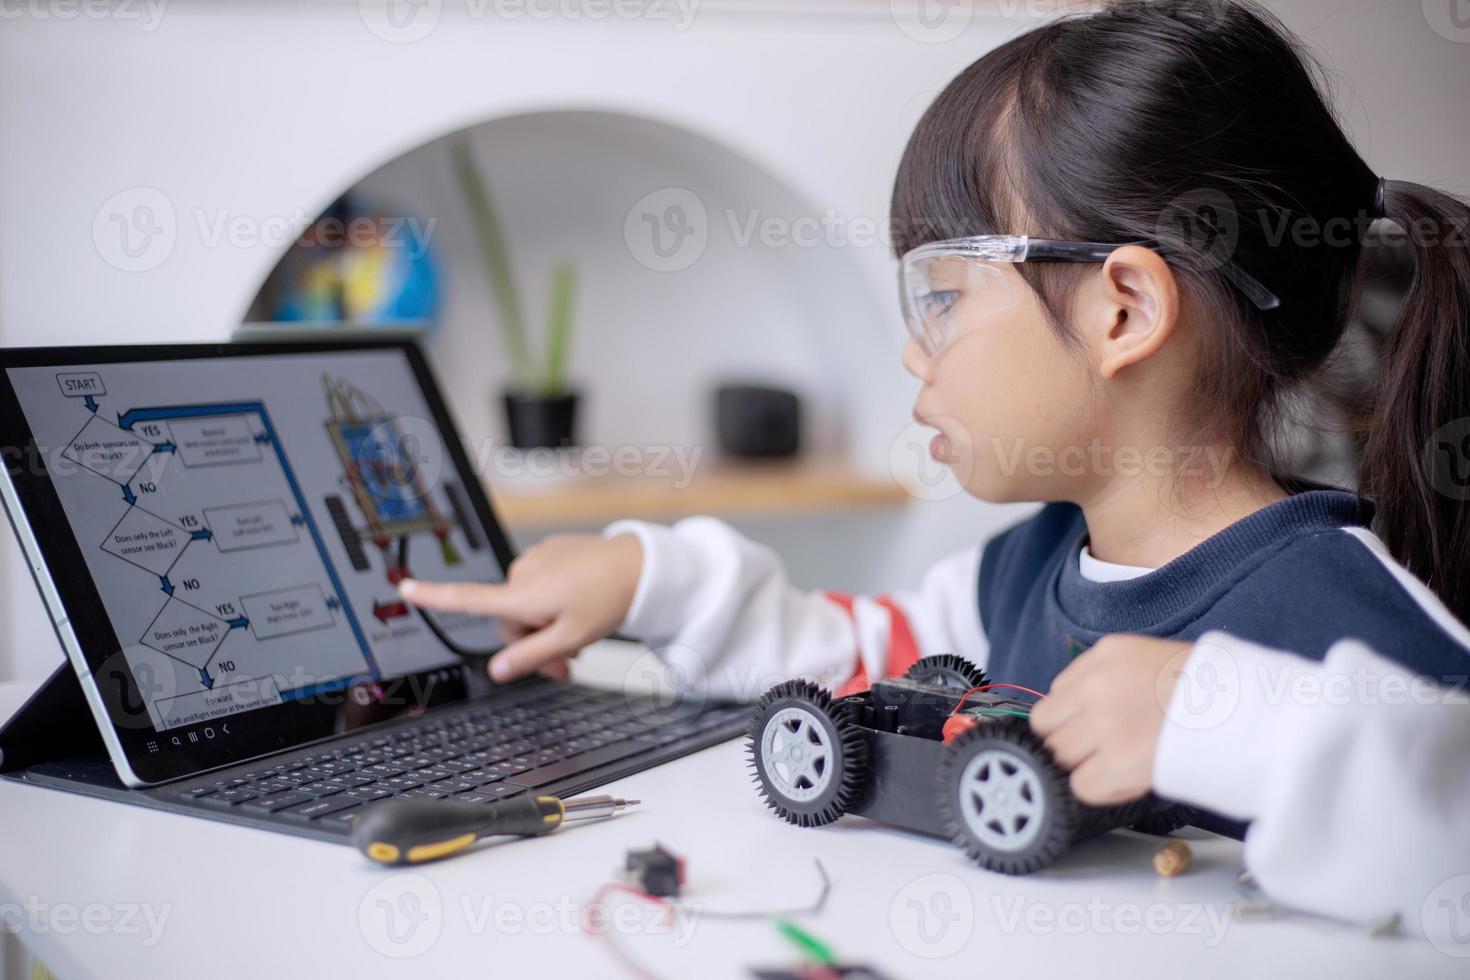 asia studenten lernen zu hause in der codierung von roboterautos und elektronischen platinenkabeln in stamm-, dampf-, mathematik-ingenieurwissenschaften-technologie-computercode im robotikkonzept für kinder foto